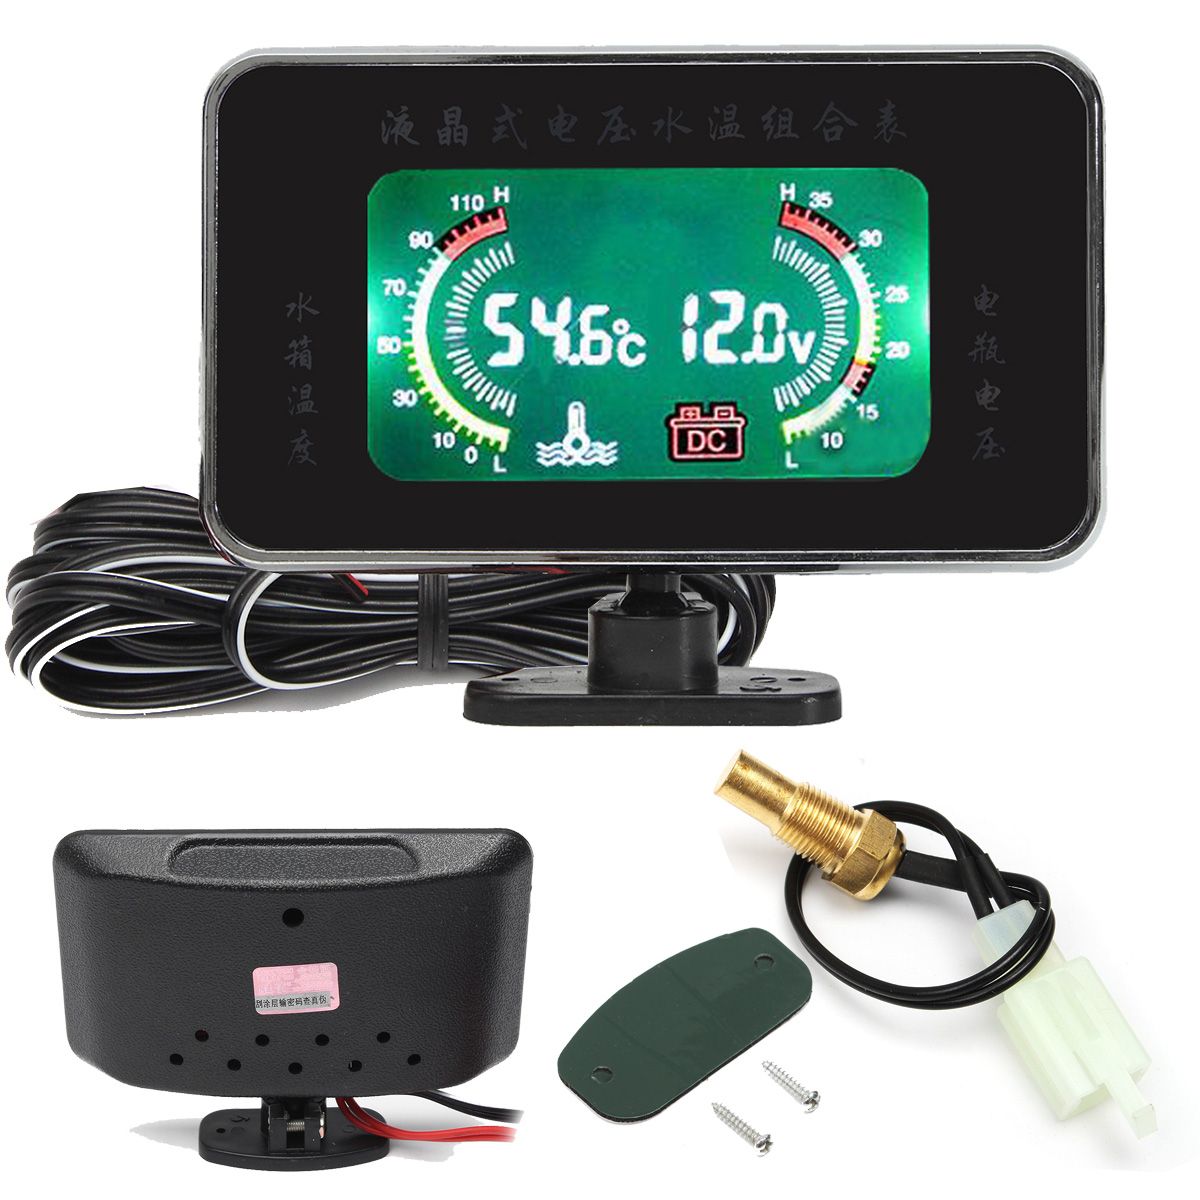 10mm-12V-24V-Car-Digital-Display-Voltmeter-Water-Temperature-Gauge-With-Sound-Alarm-1289193